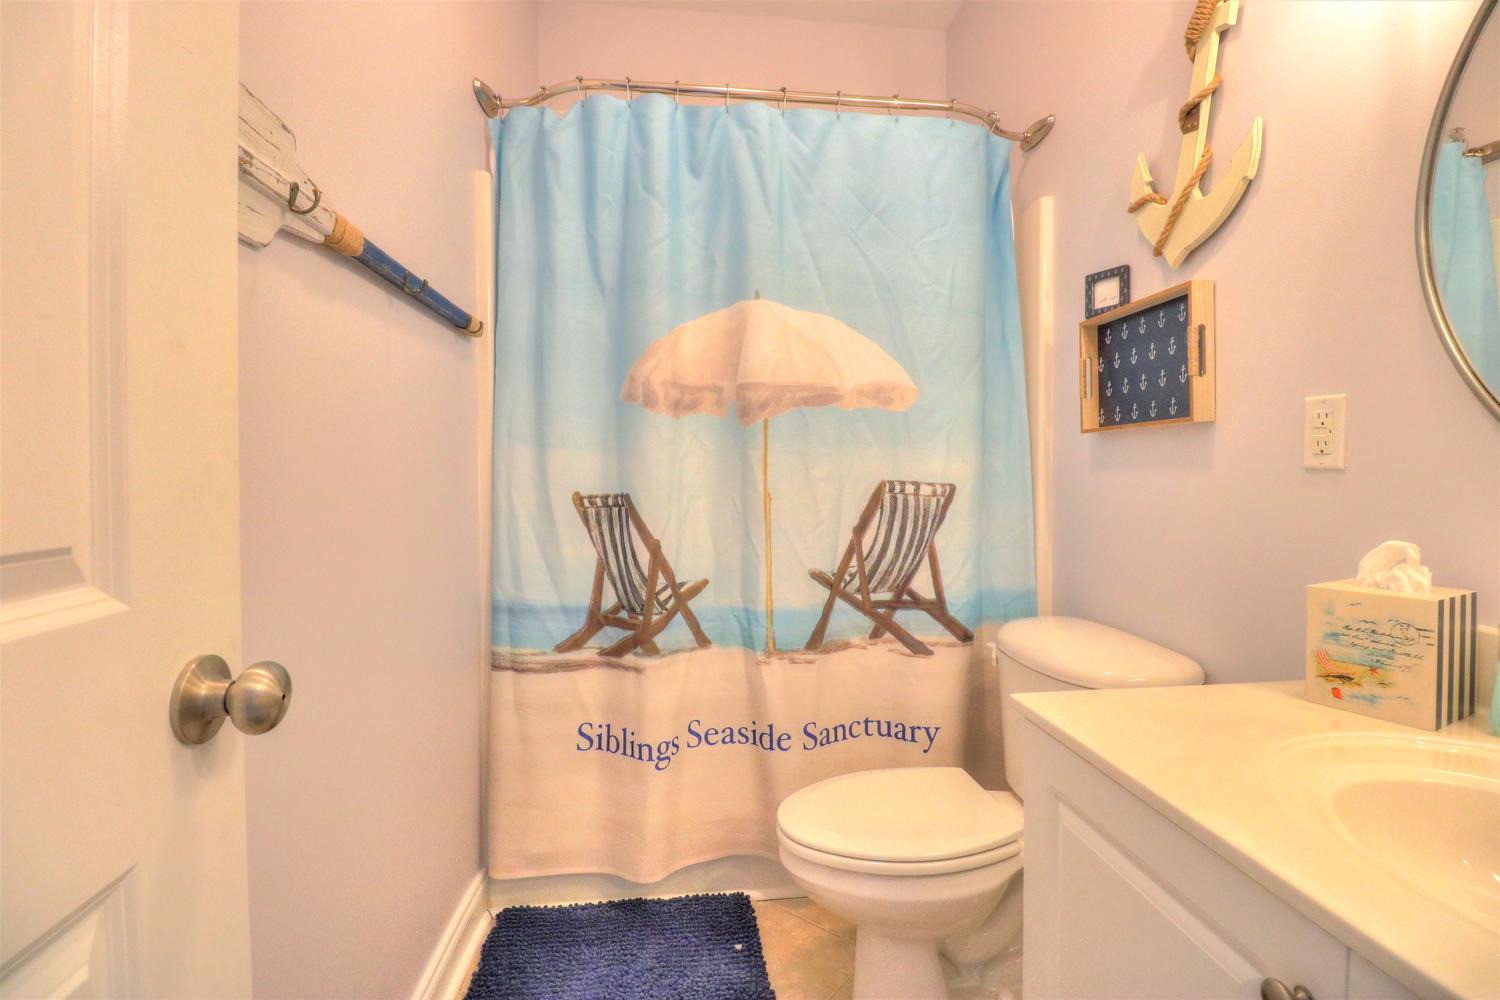 Siblings+Seaside+Sanctuary-Bathroom